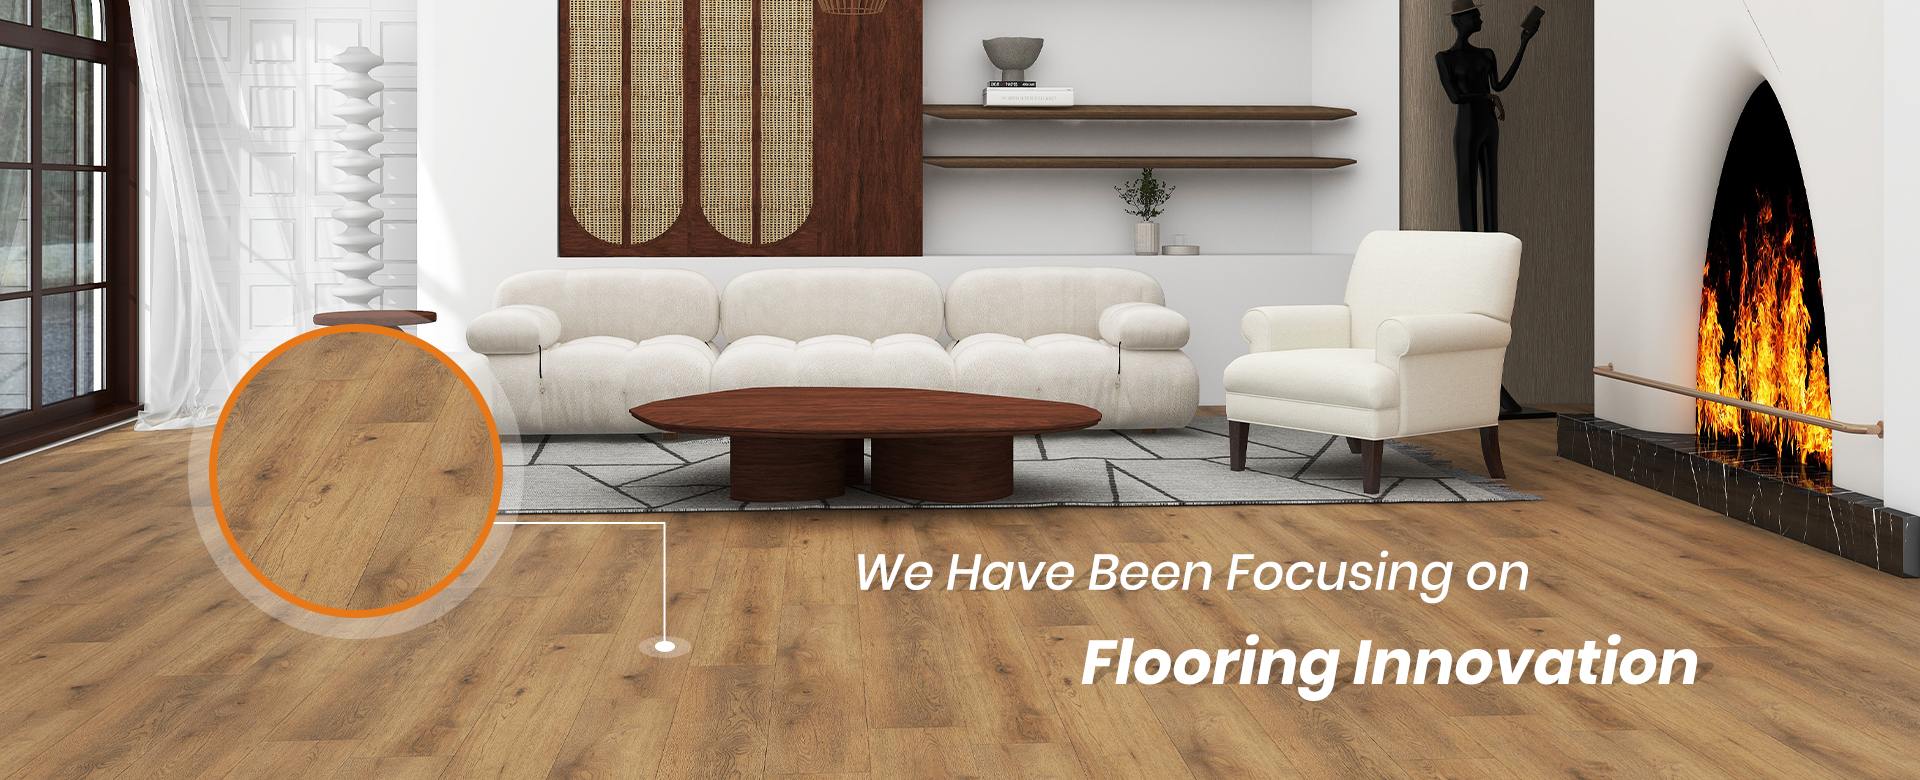 Flooring Innovation